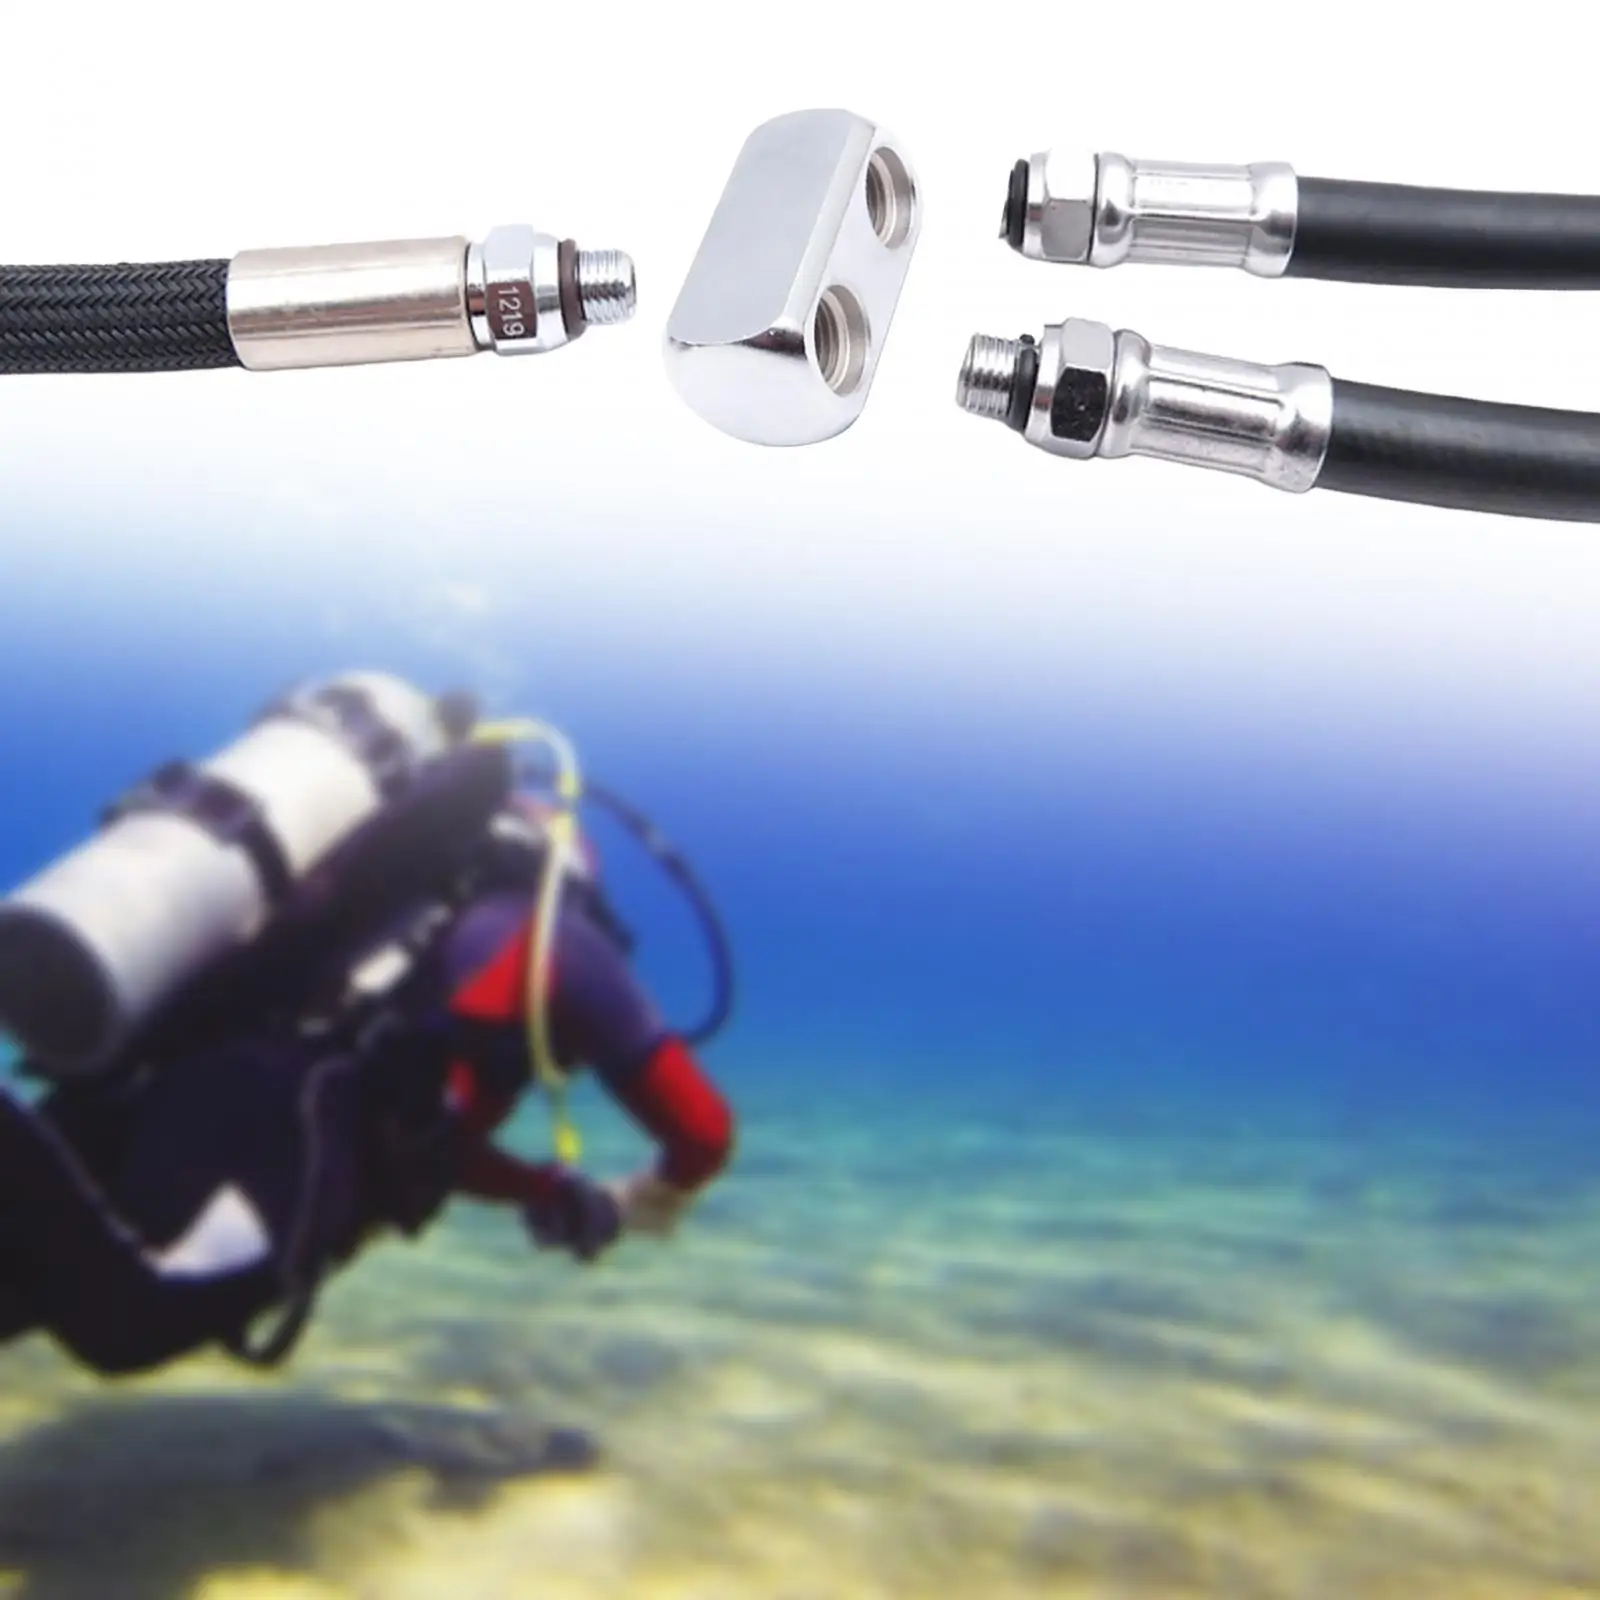 Scuba Diving Regulator Adapter Snorkeling Free Diving Underwater Brass Outdoor Activities Dive Brass Accessories Equipment